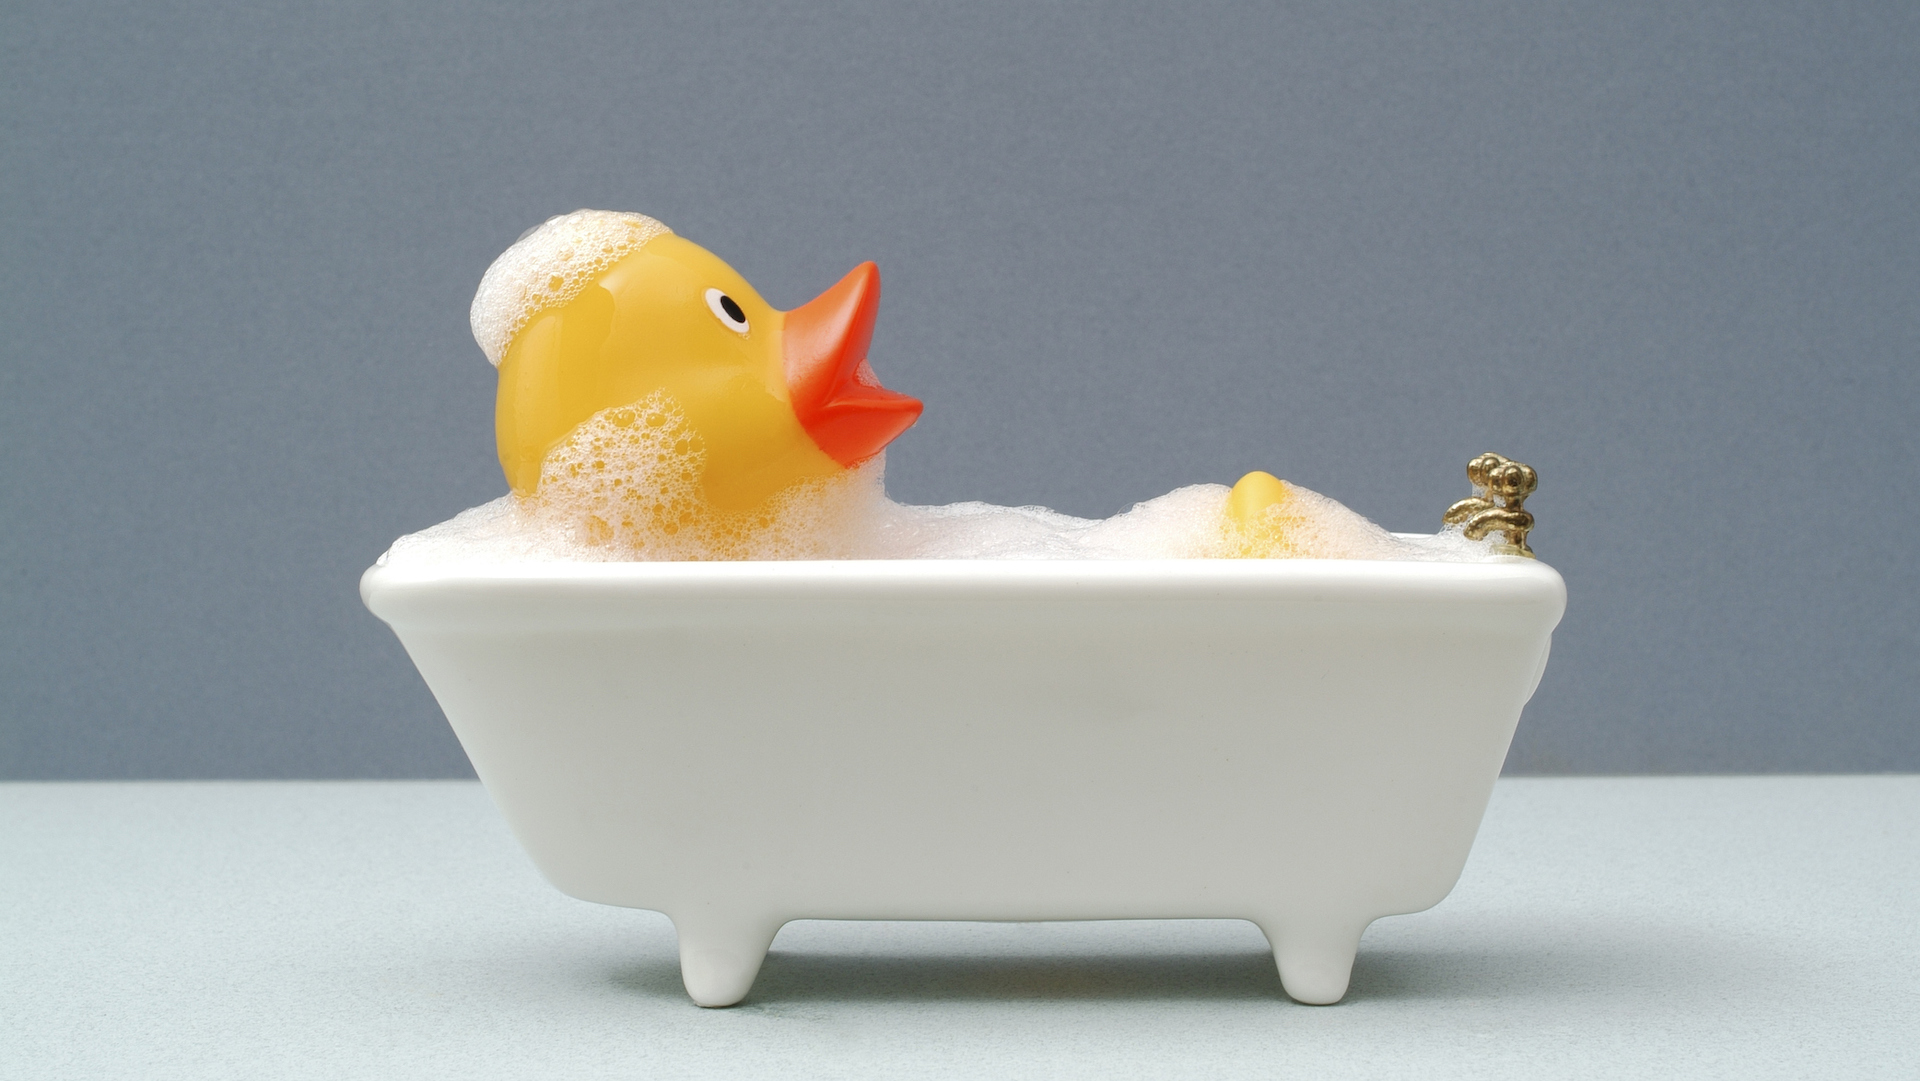 A rubber duck enjoying a bath